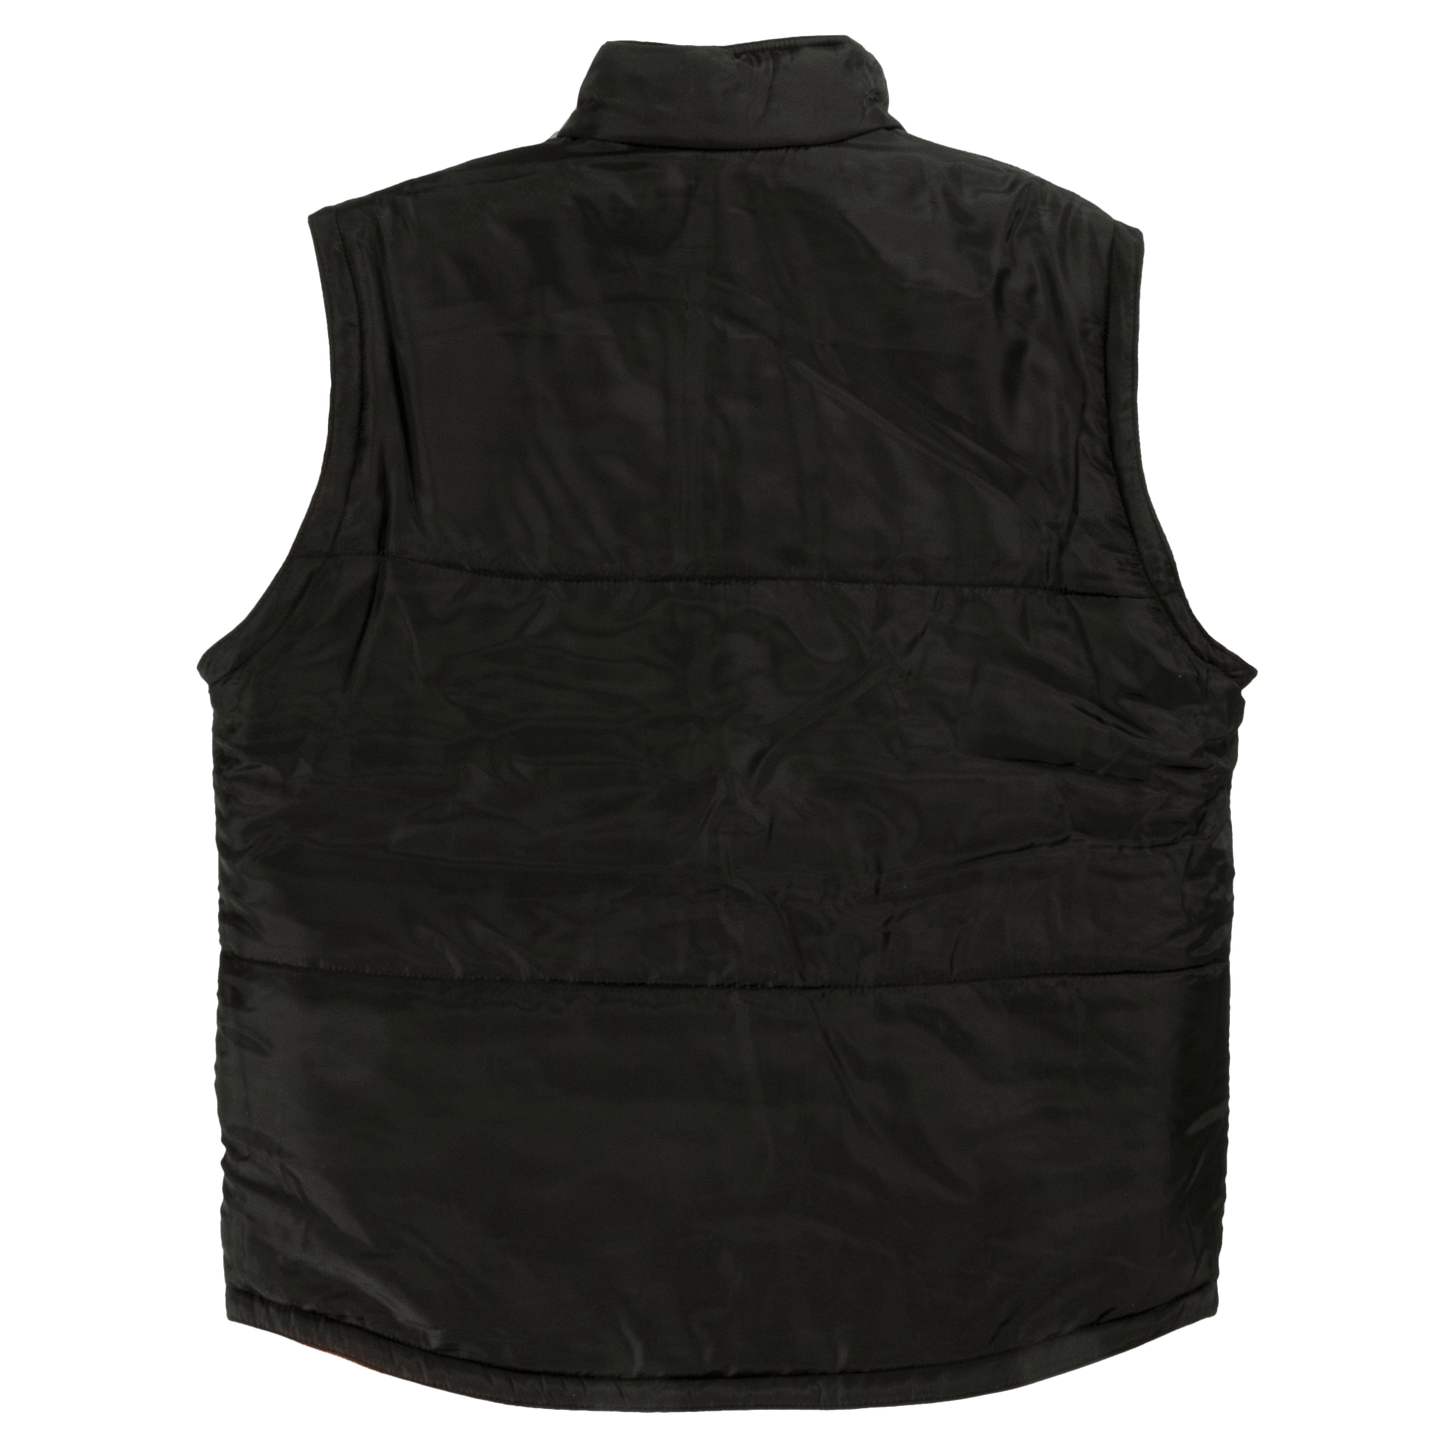 Tough Duck 5-in-1 Safety Jacket - S426 - Black - liner -vest